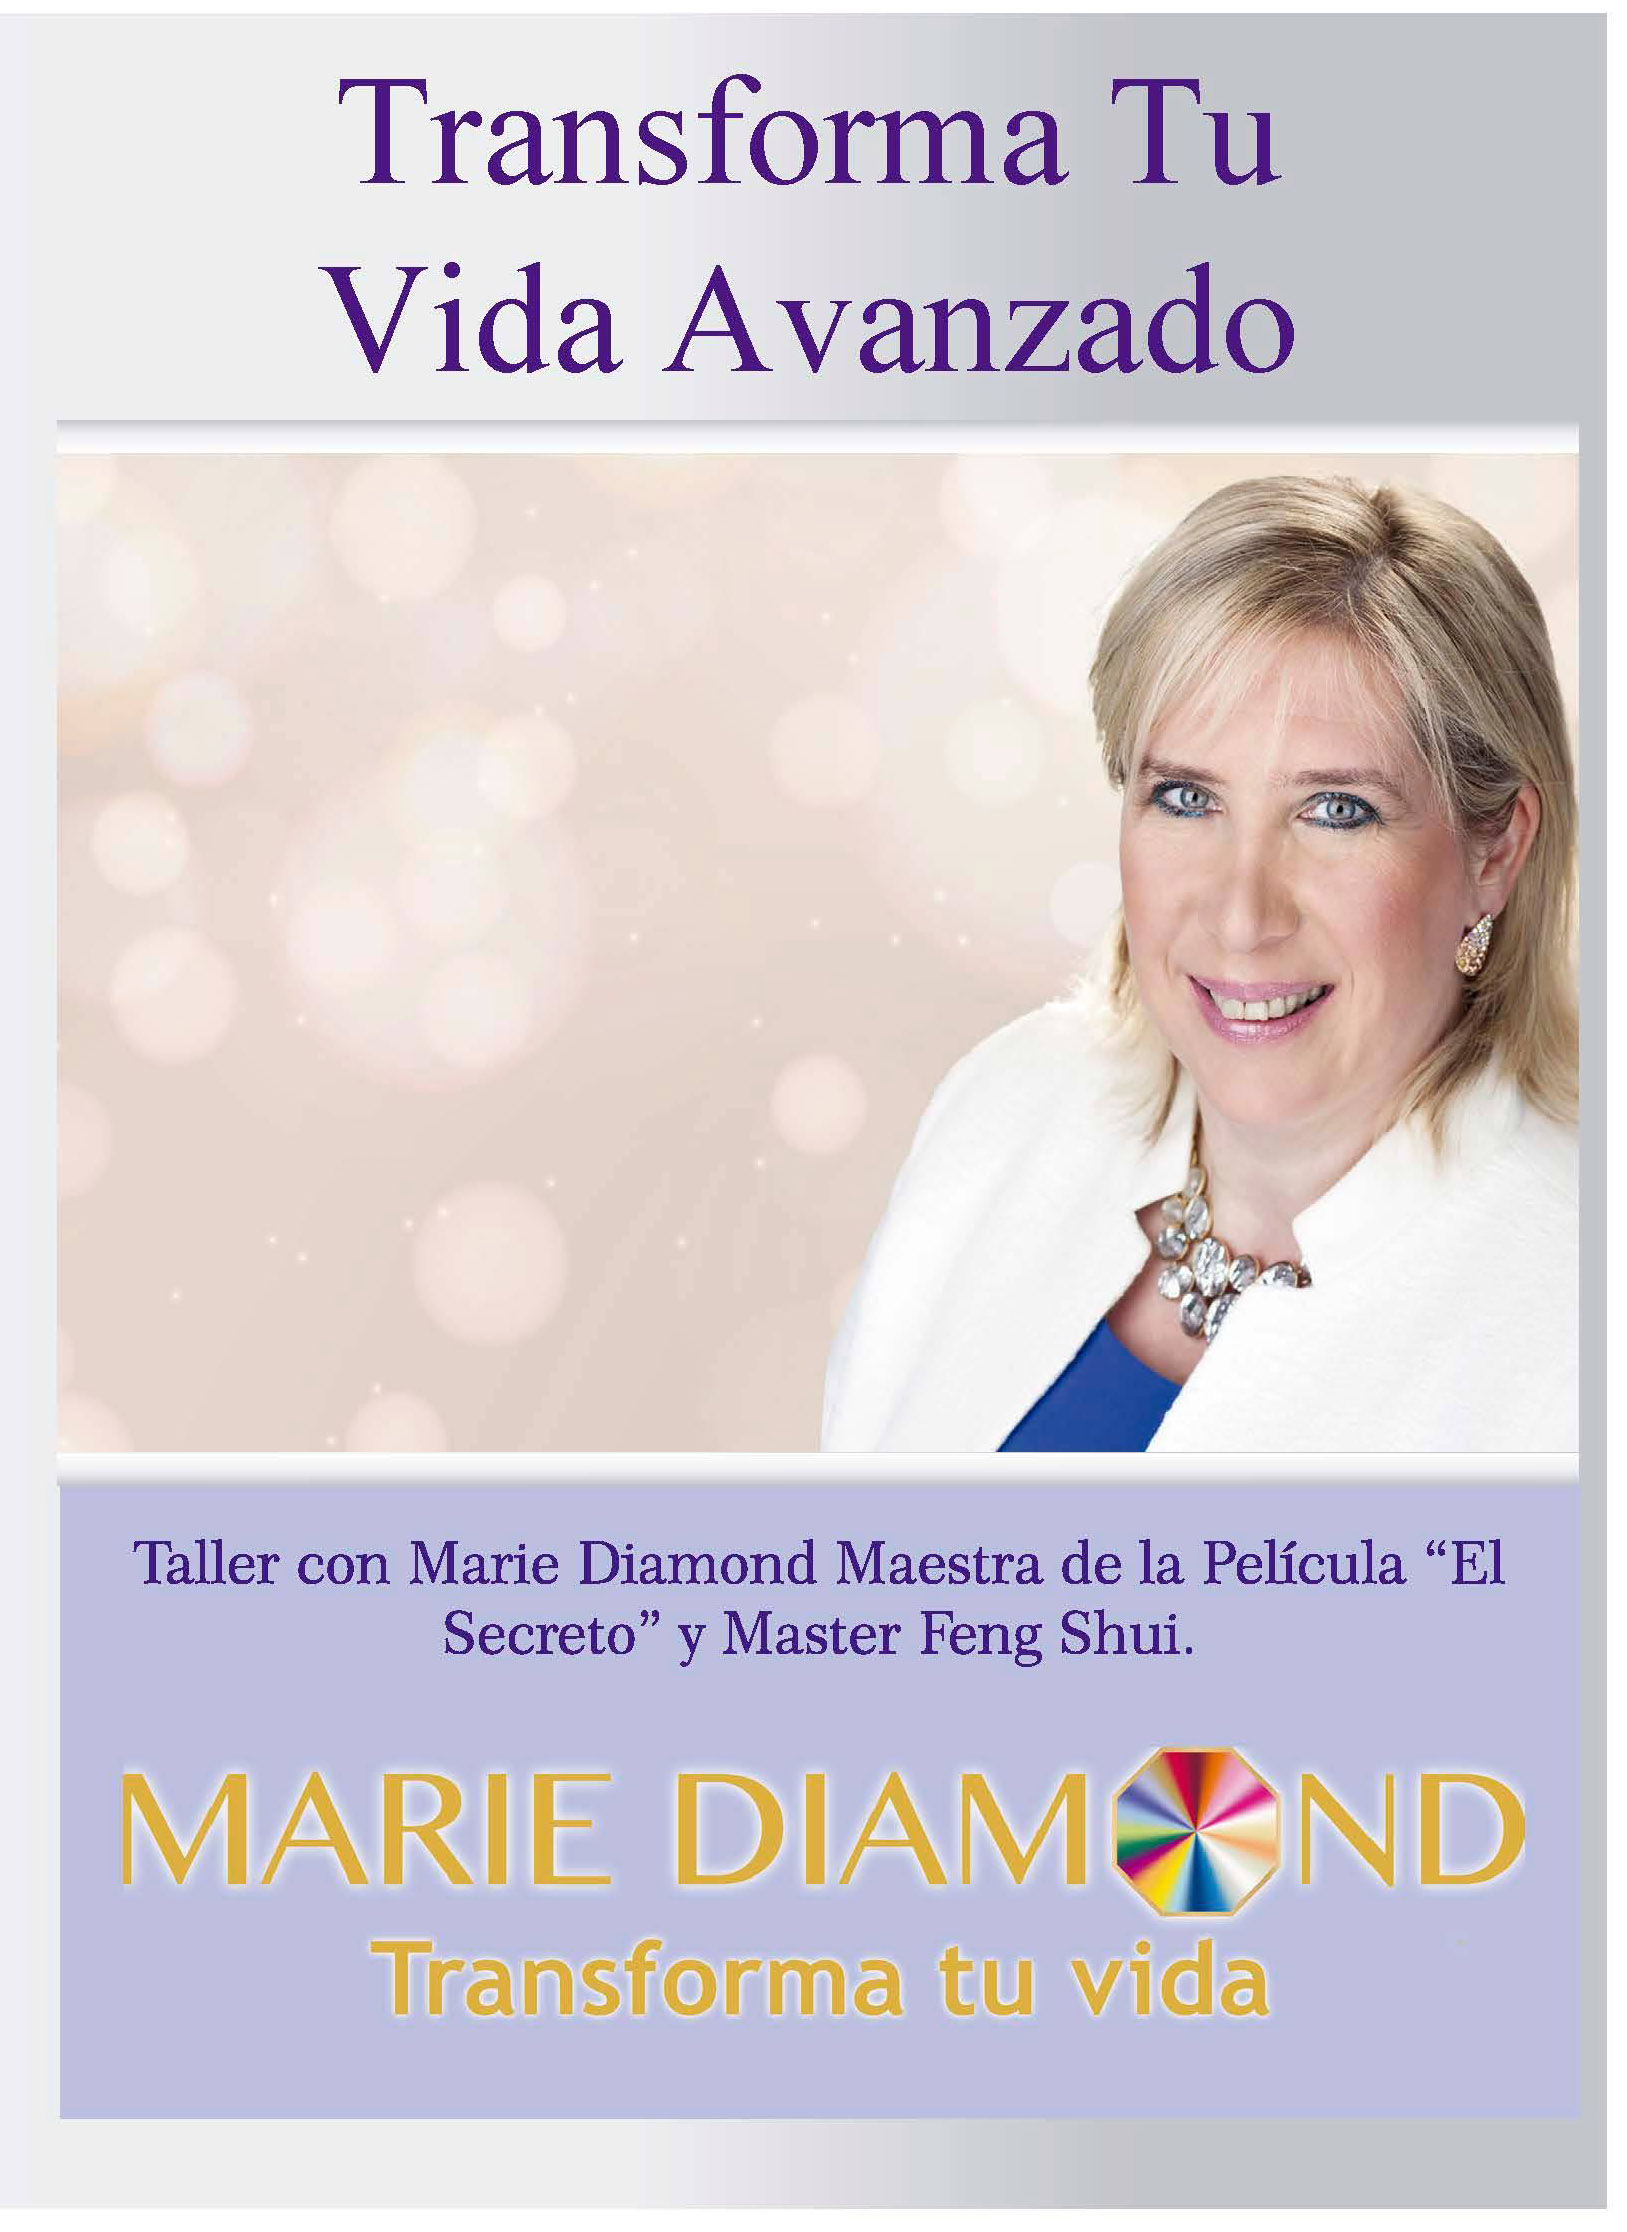 Transforma tu vida avanzado Marie Diamond